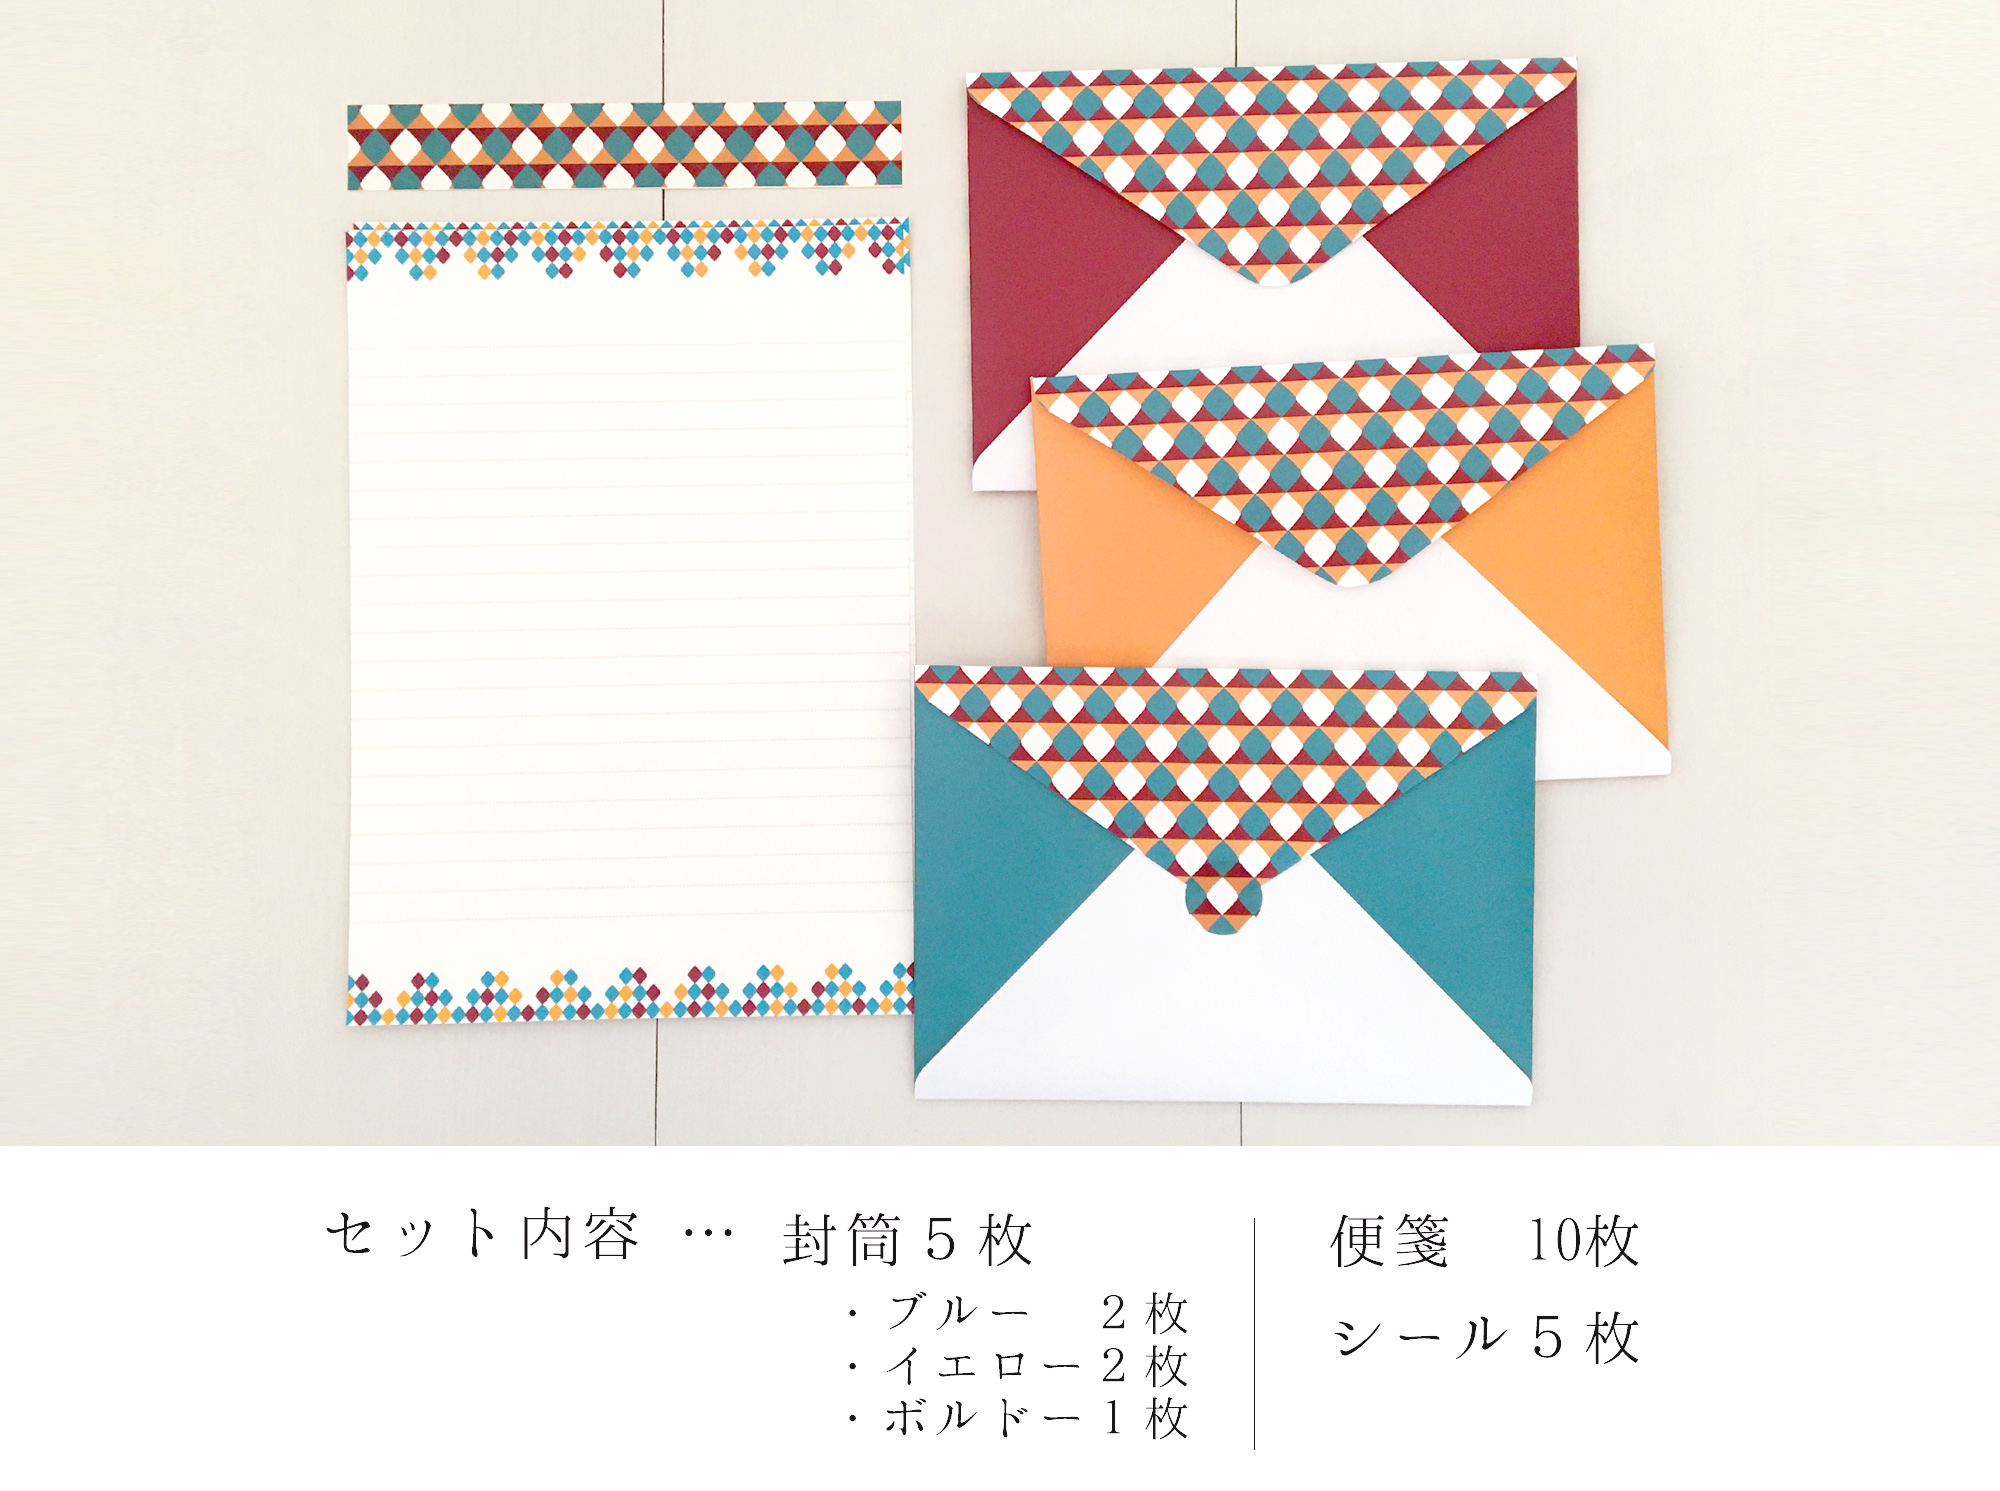 幾何学模様のレターセット シール付き 3色の封筒を楽しめる おしゃれな大人のお手紙 北欧 レトロ Iichi ハンドメイド クラフト作品 手仕事品の通販